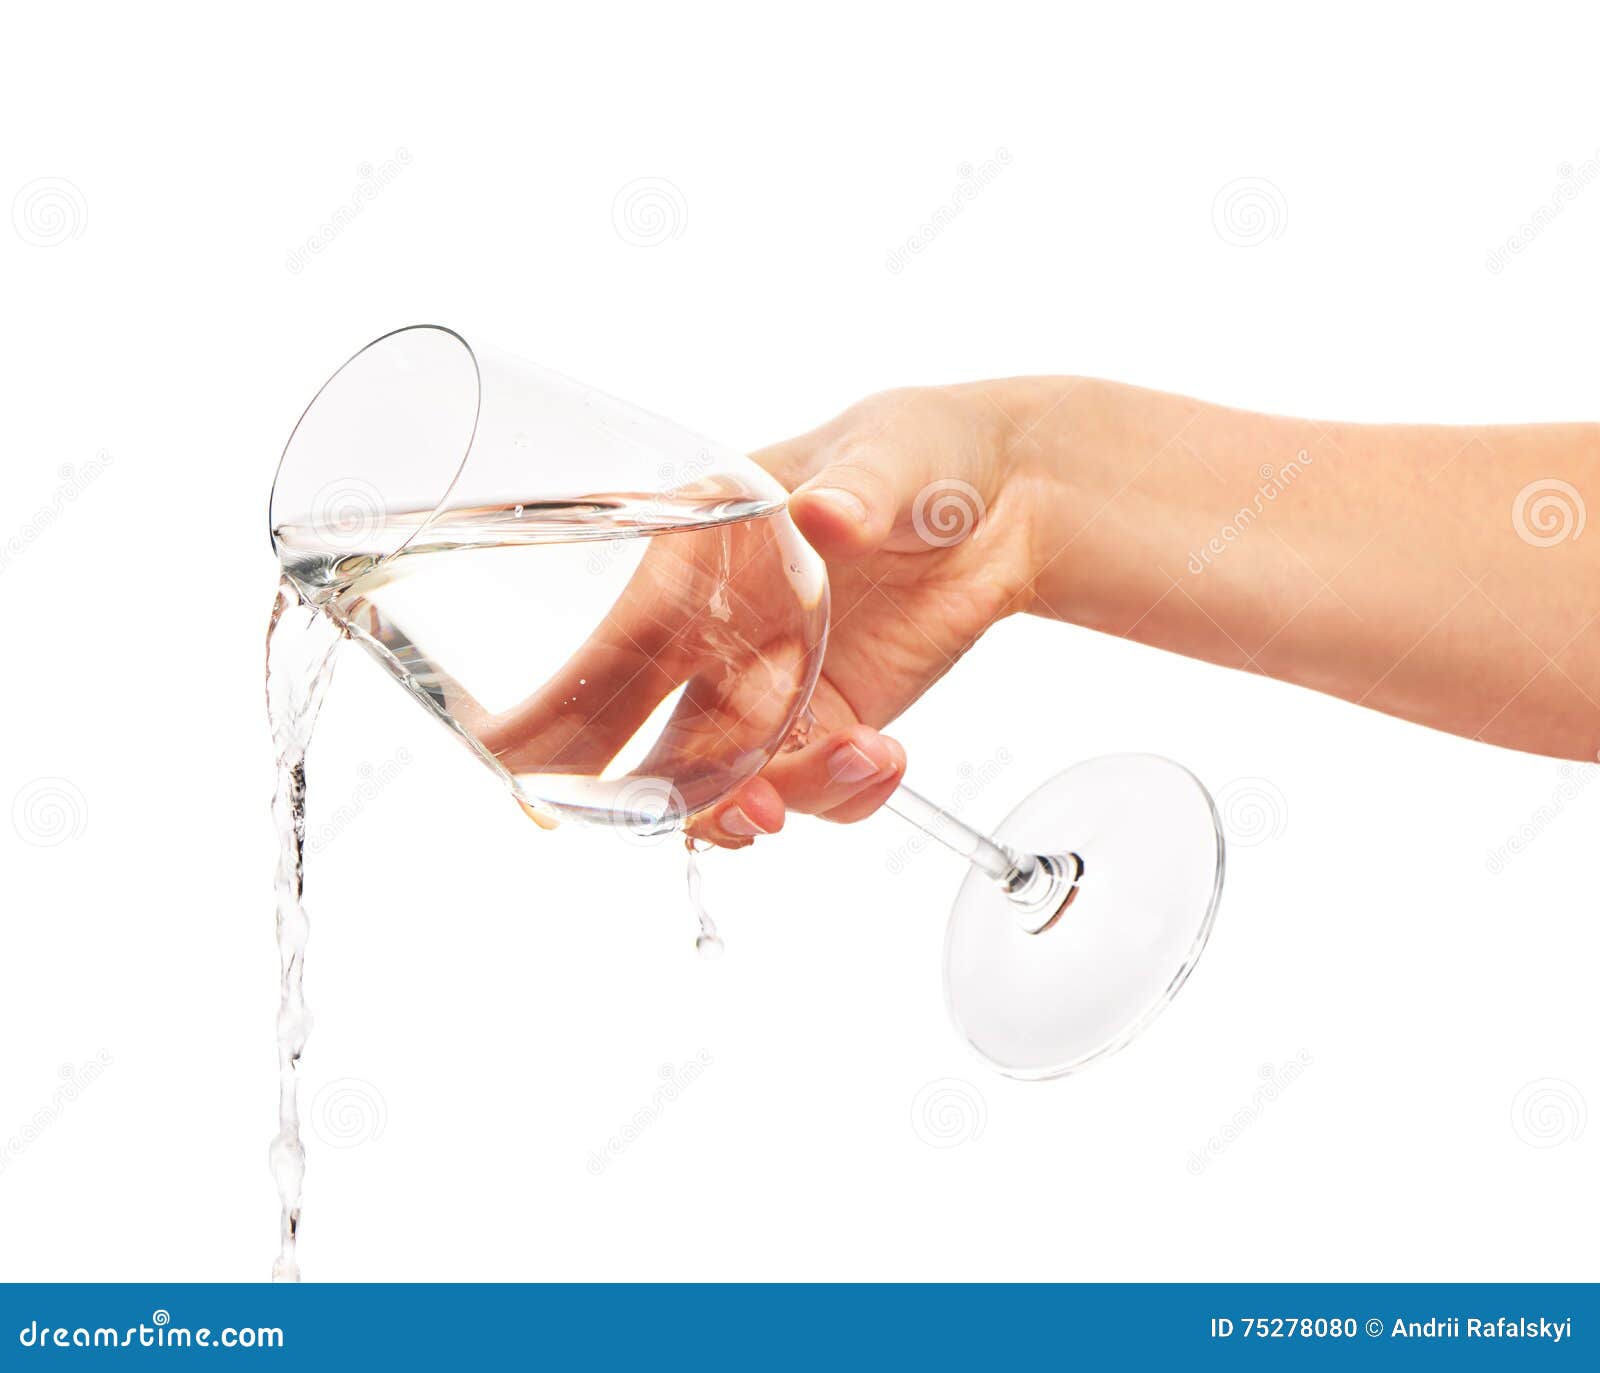 Воду лить стакан. Рука с бокалом. Стакан воды. Вода льется в стакан. Вода выливается из стакана.